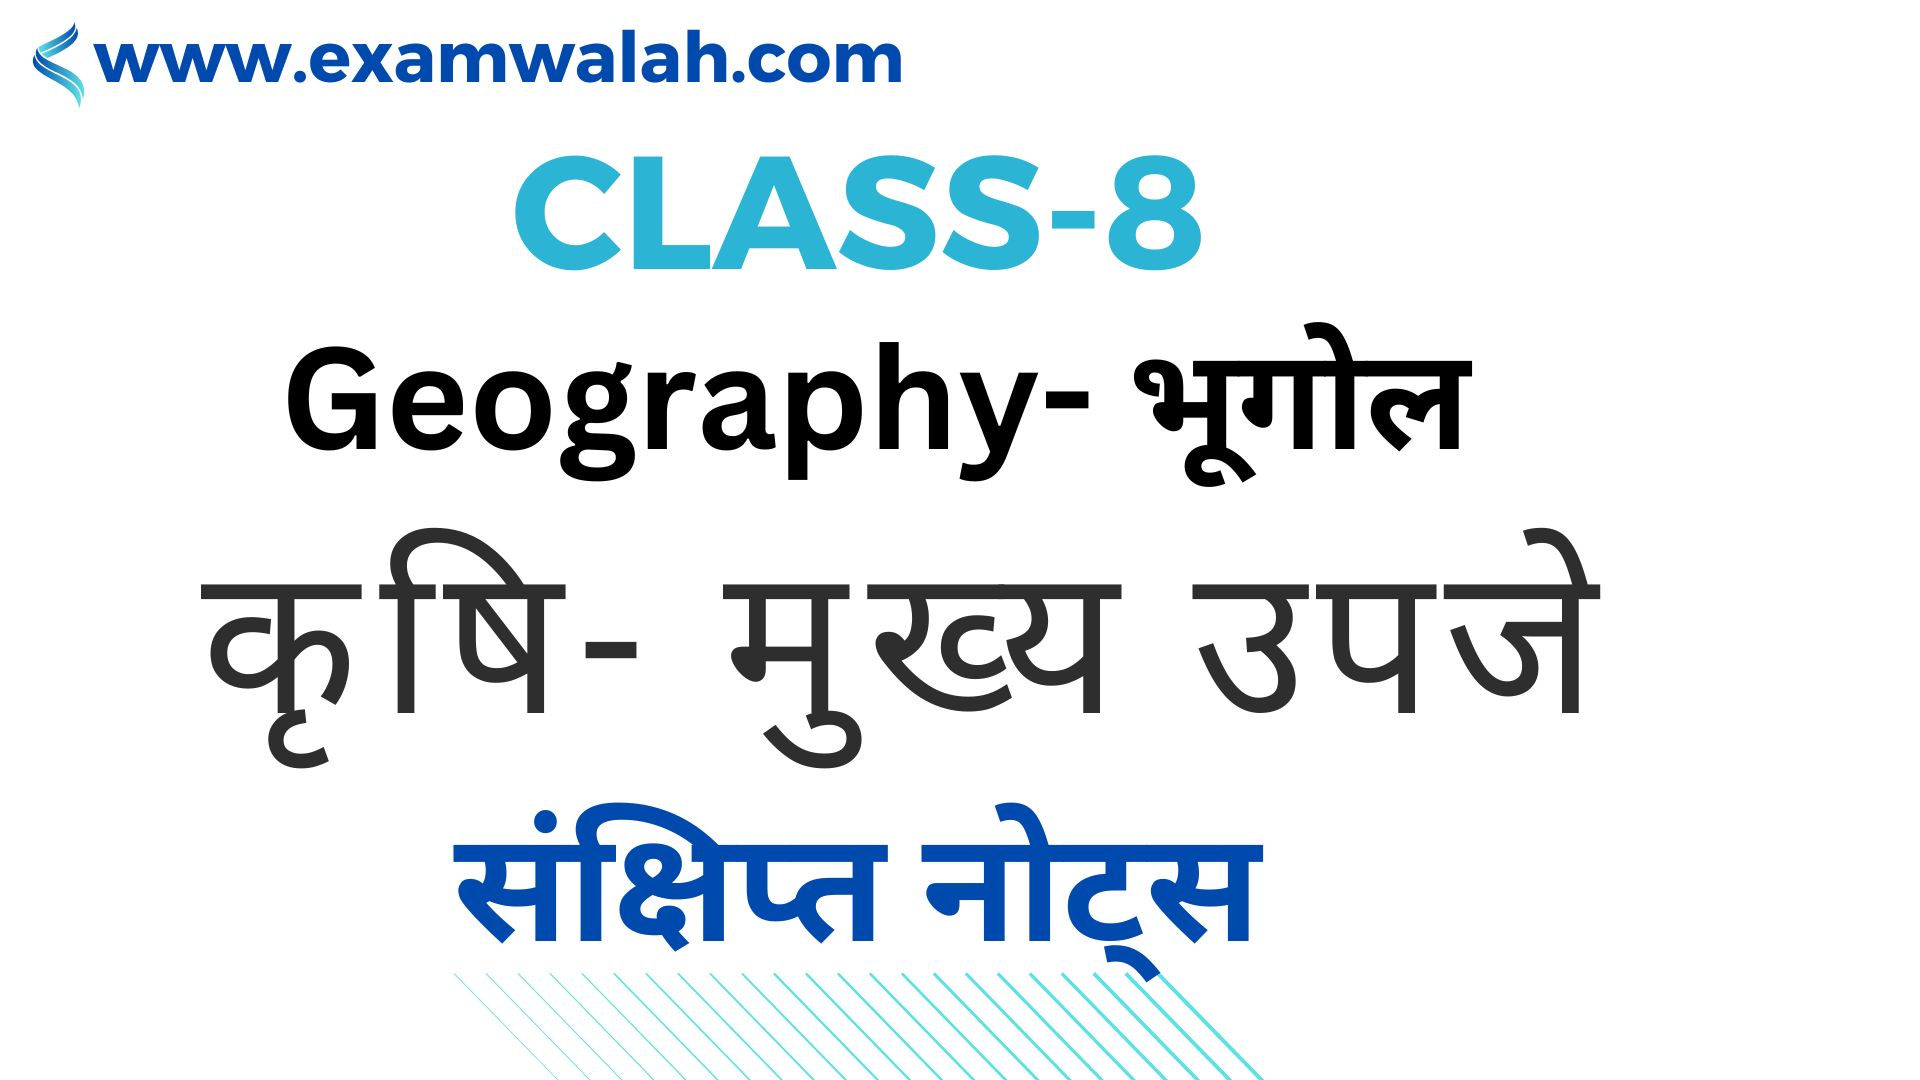 Class-8 Geography Agricultural-Main Produces in Hindi - कक्षा- 8 भूगोल ‘कृषि मुख्य उपजे’ संक्षिप्त नोट्स